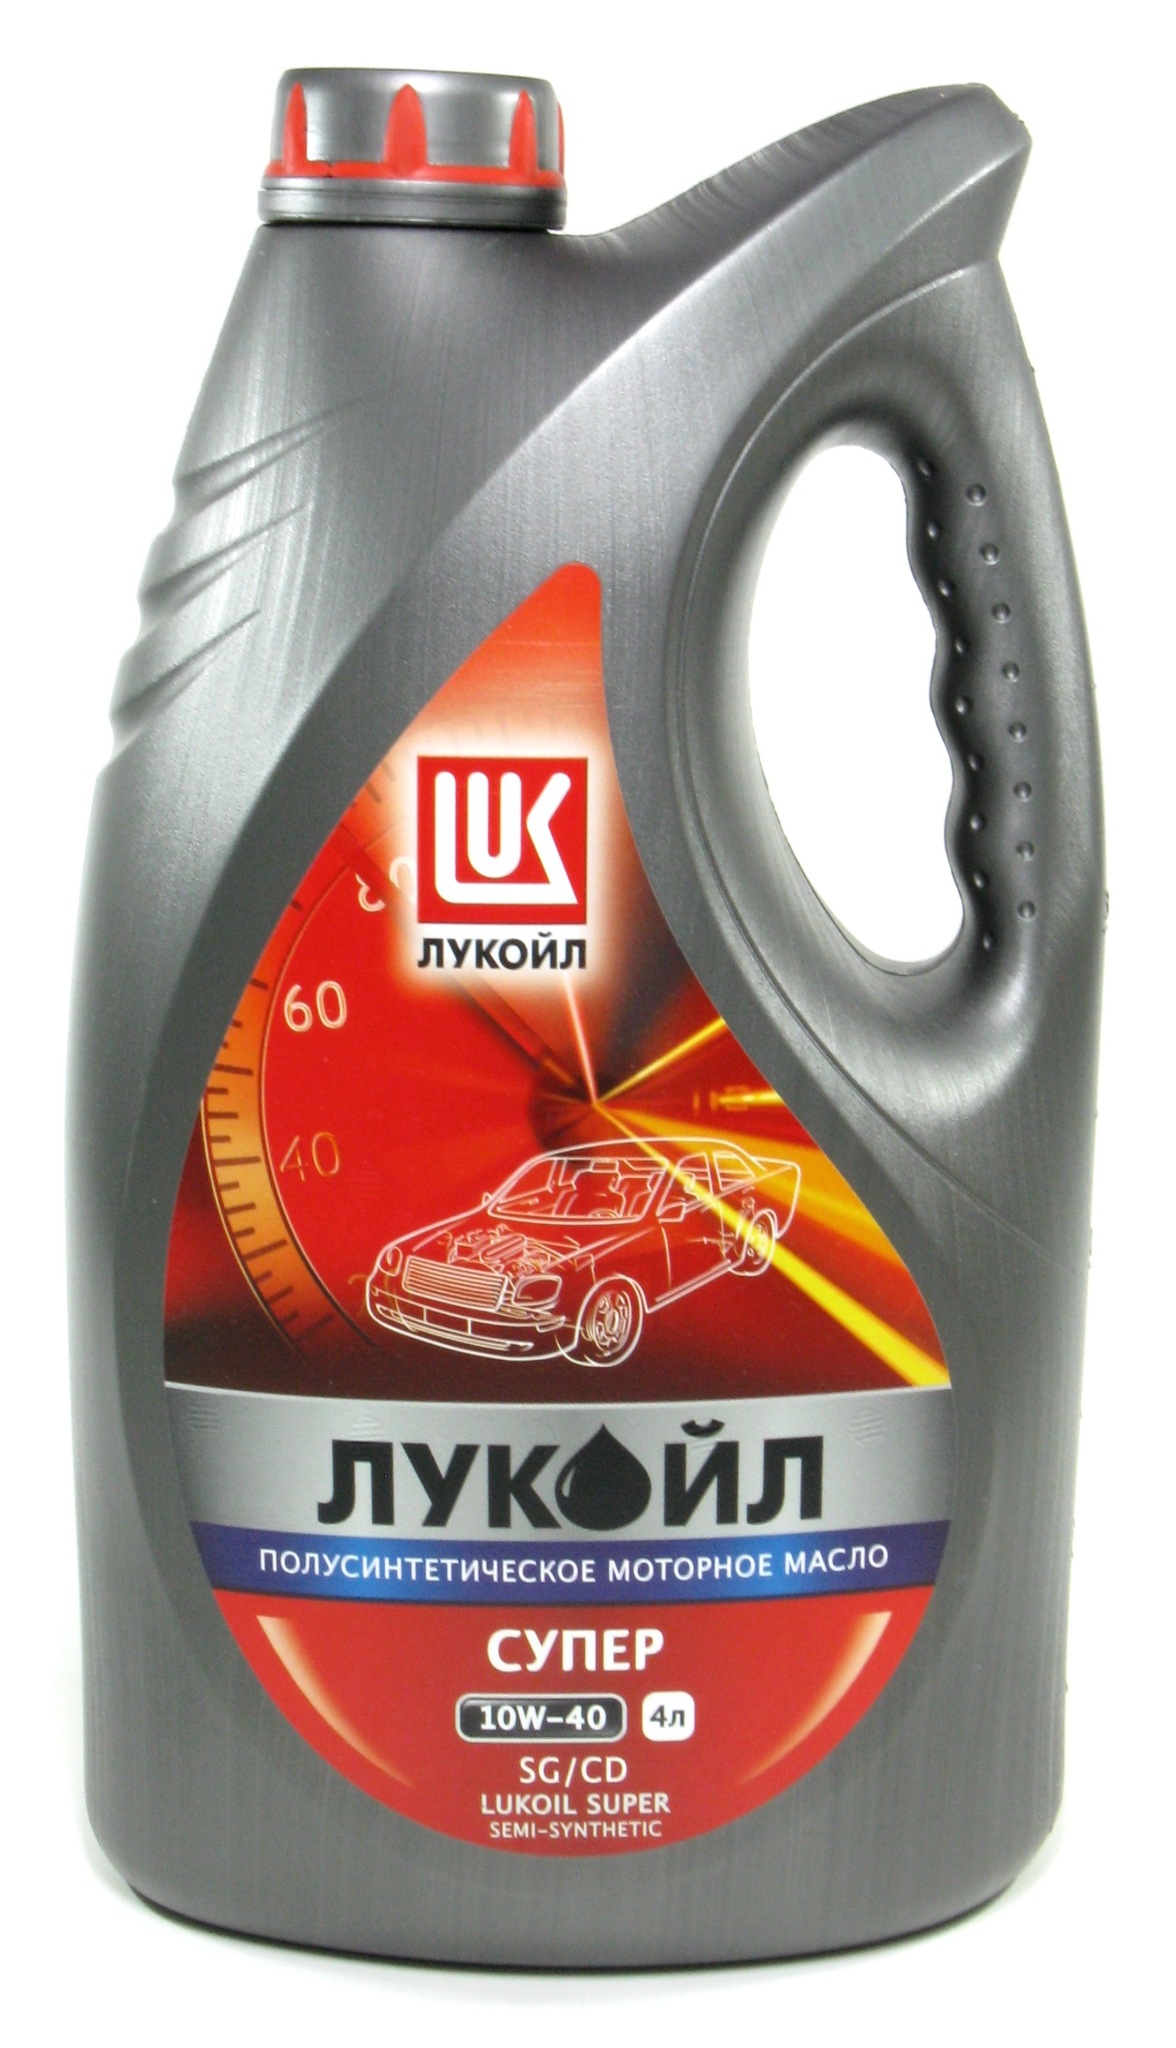 Лукойл Супер 10W40 SG/CD Полусинтетическое моторное масло